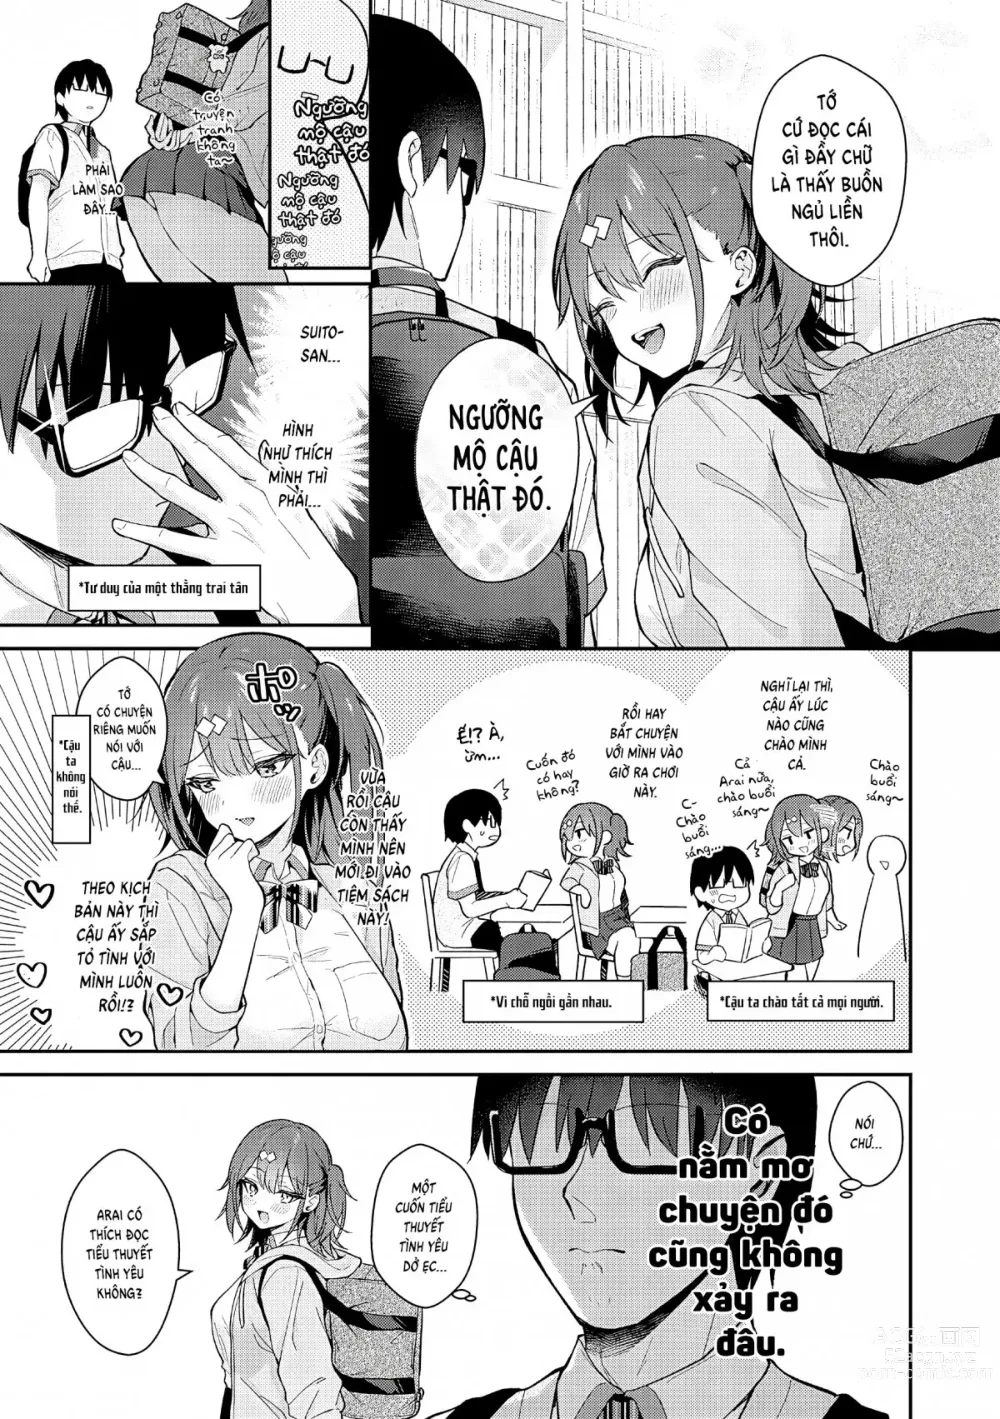 Page 4 of manga Tuyệt hơn cả giả tưởng (decensored)